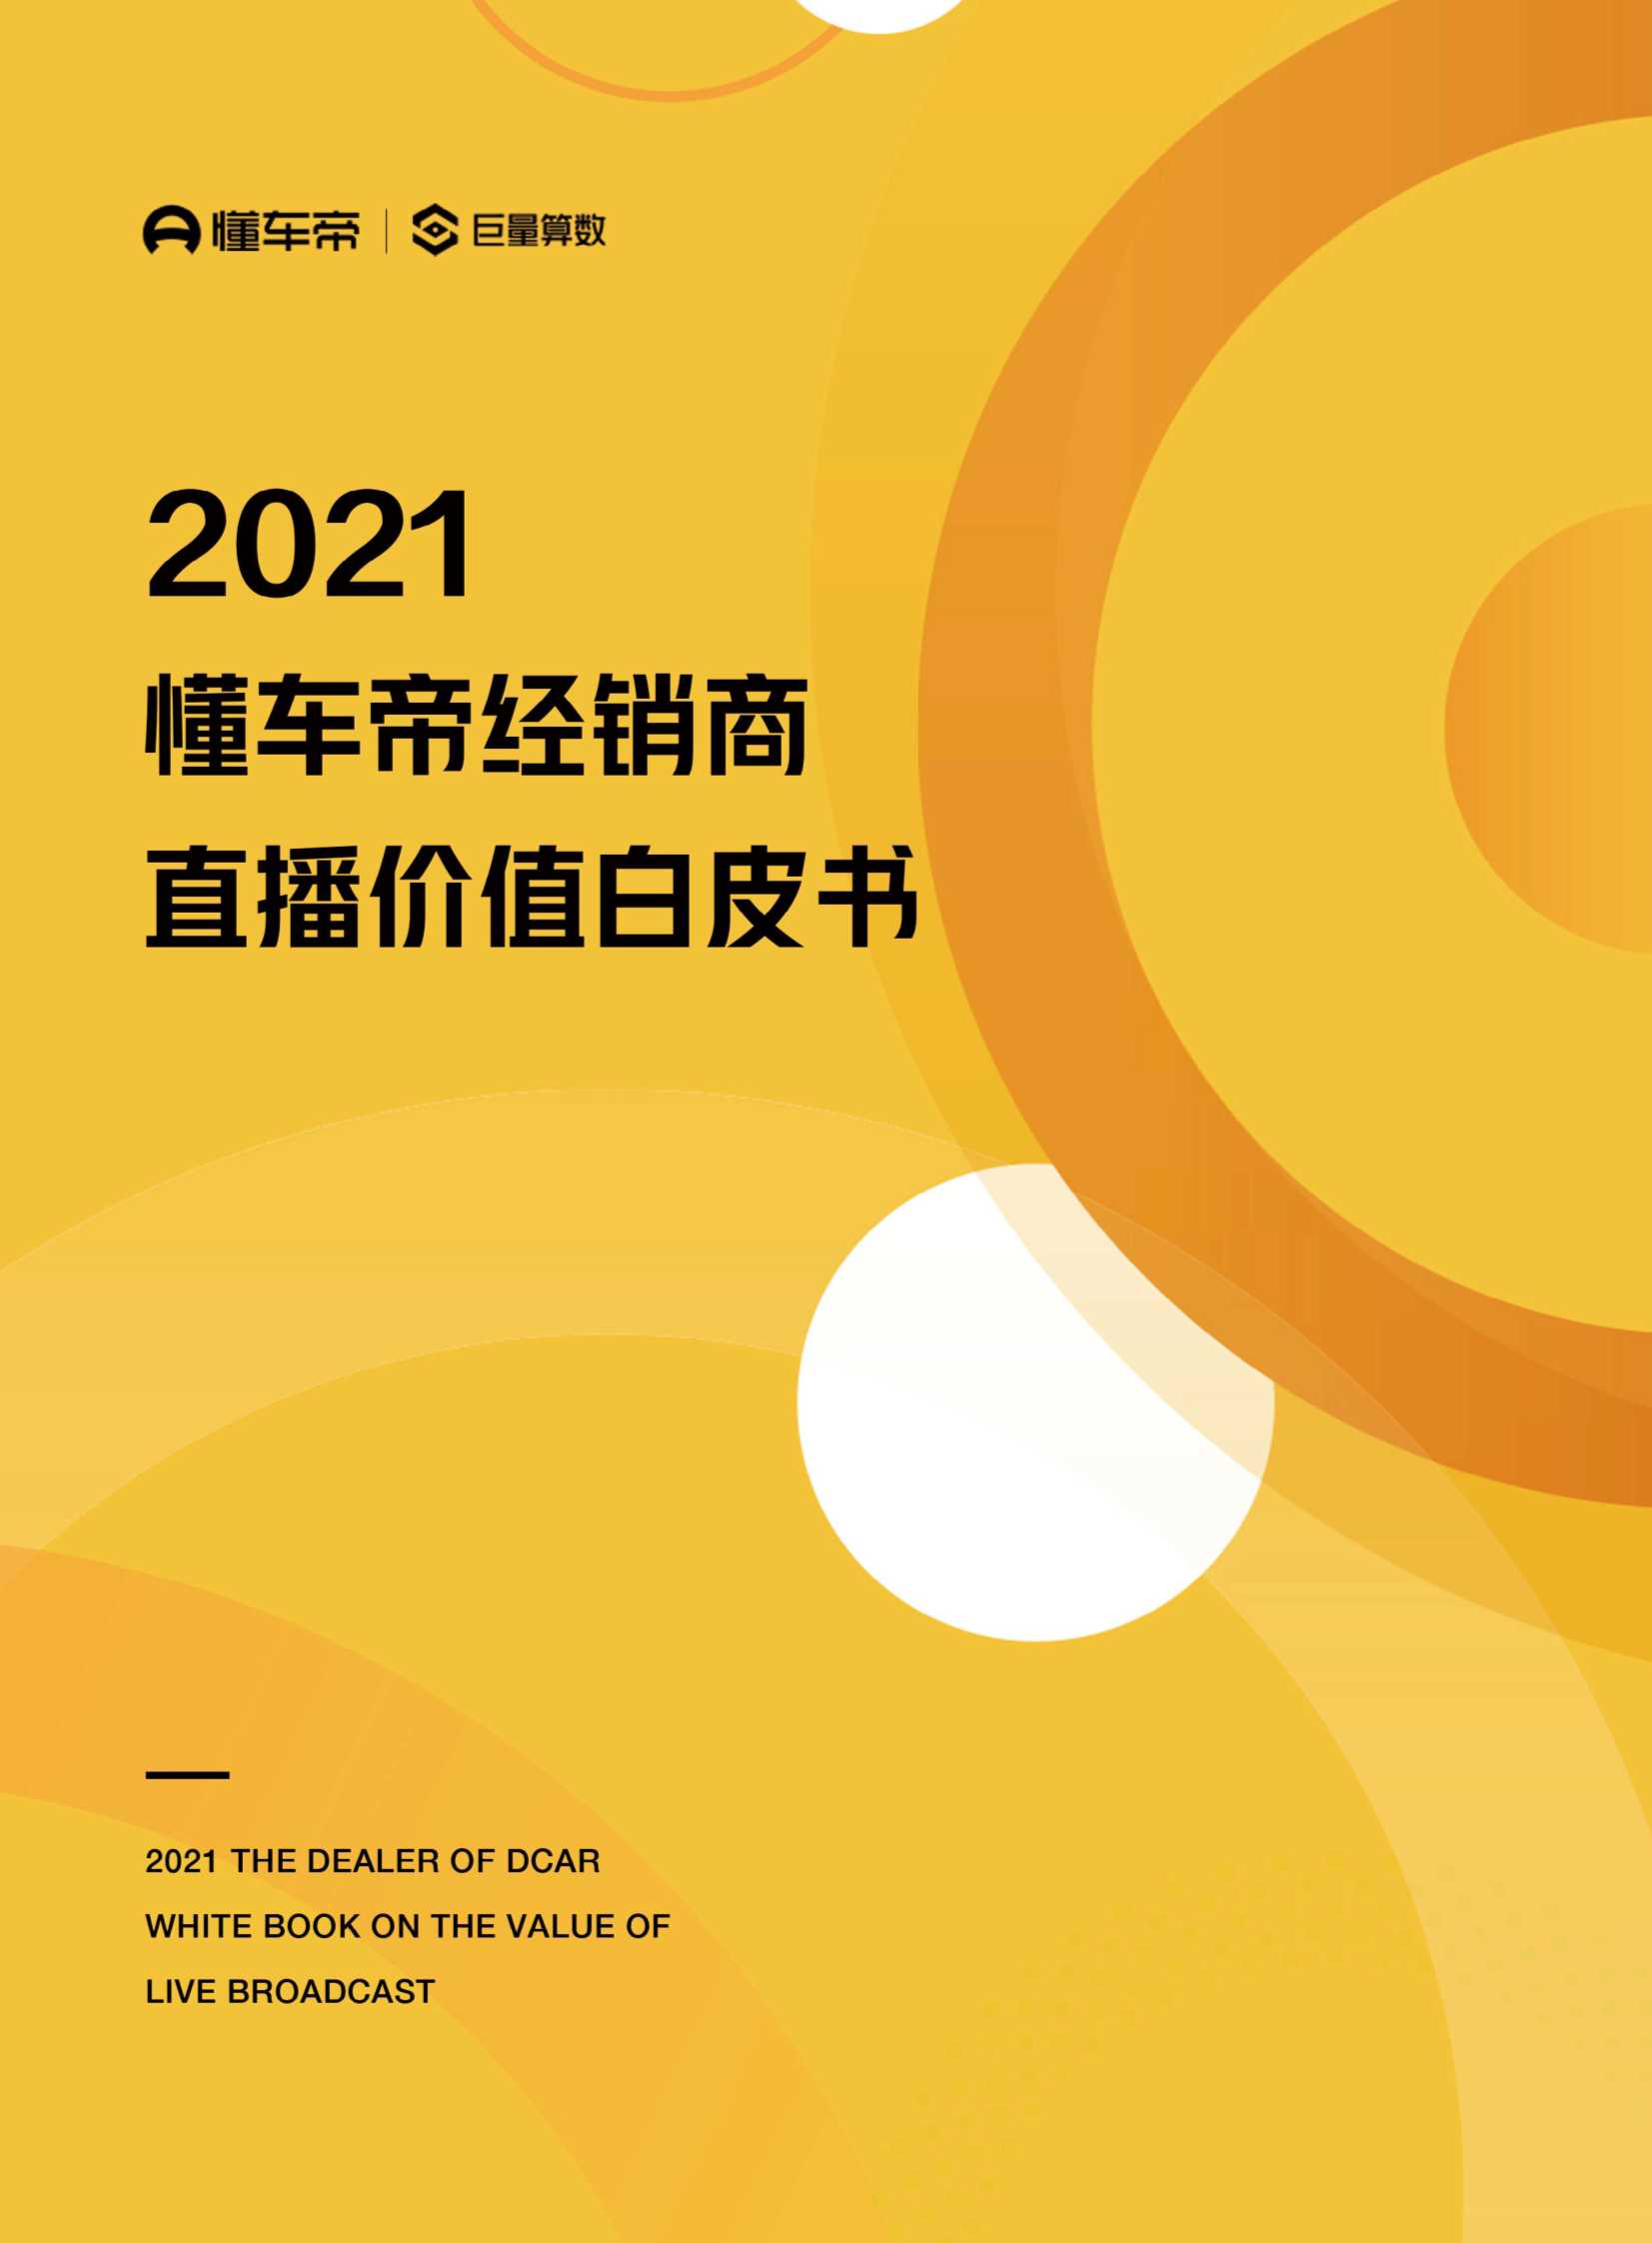 巨量算数-2021懂车帝经销商直播价值白皮书-2021.07-31页